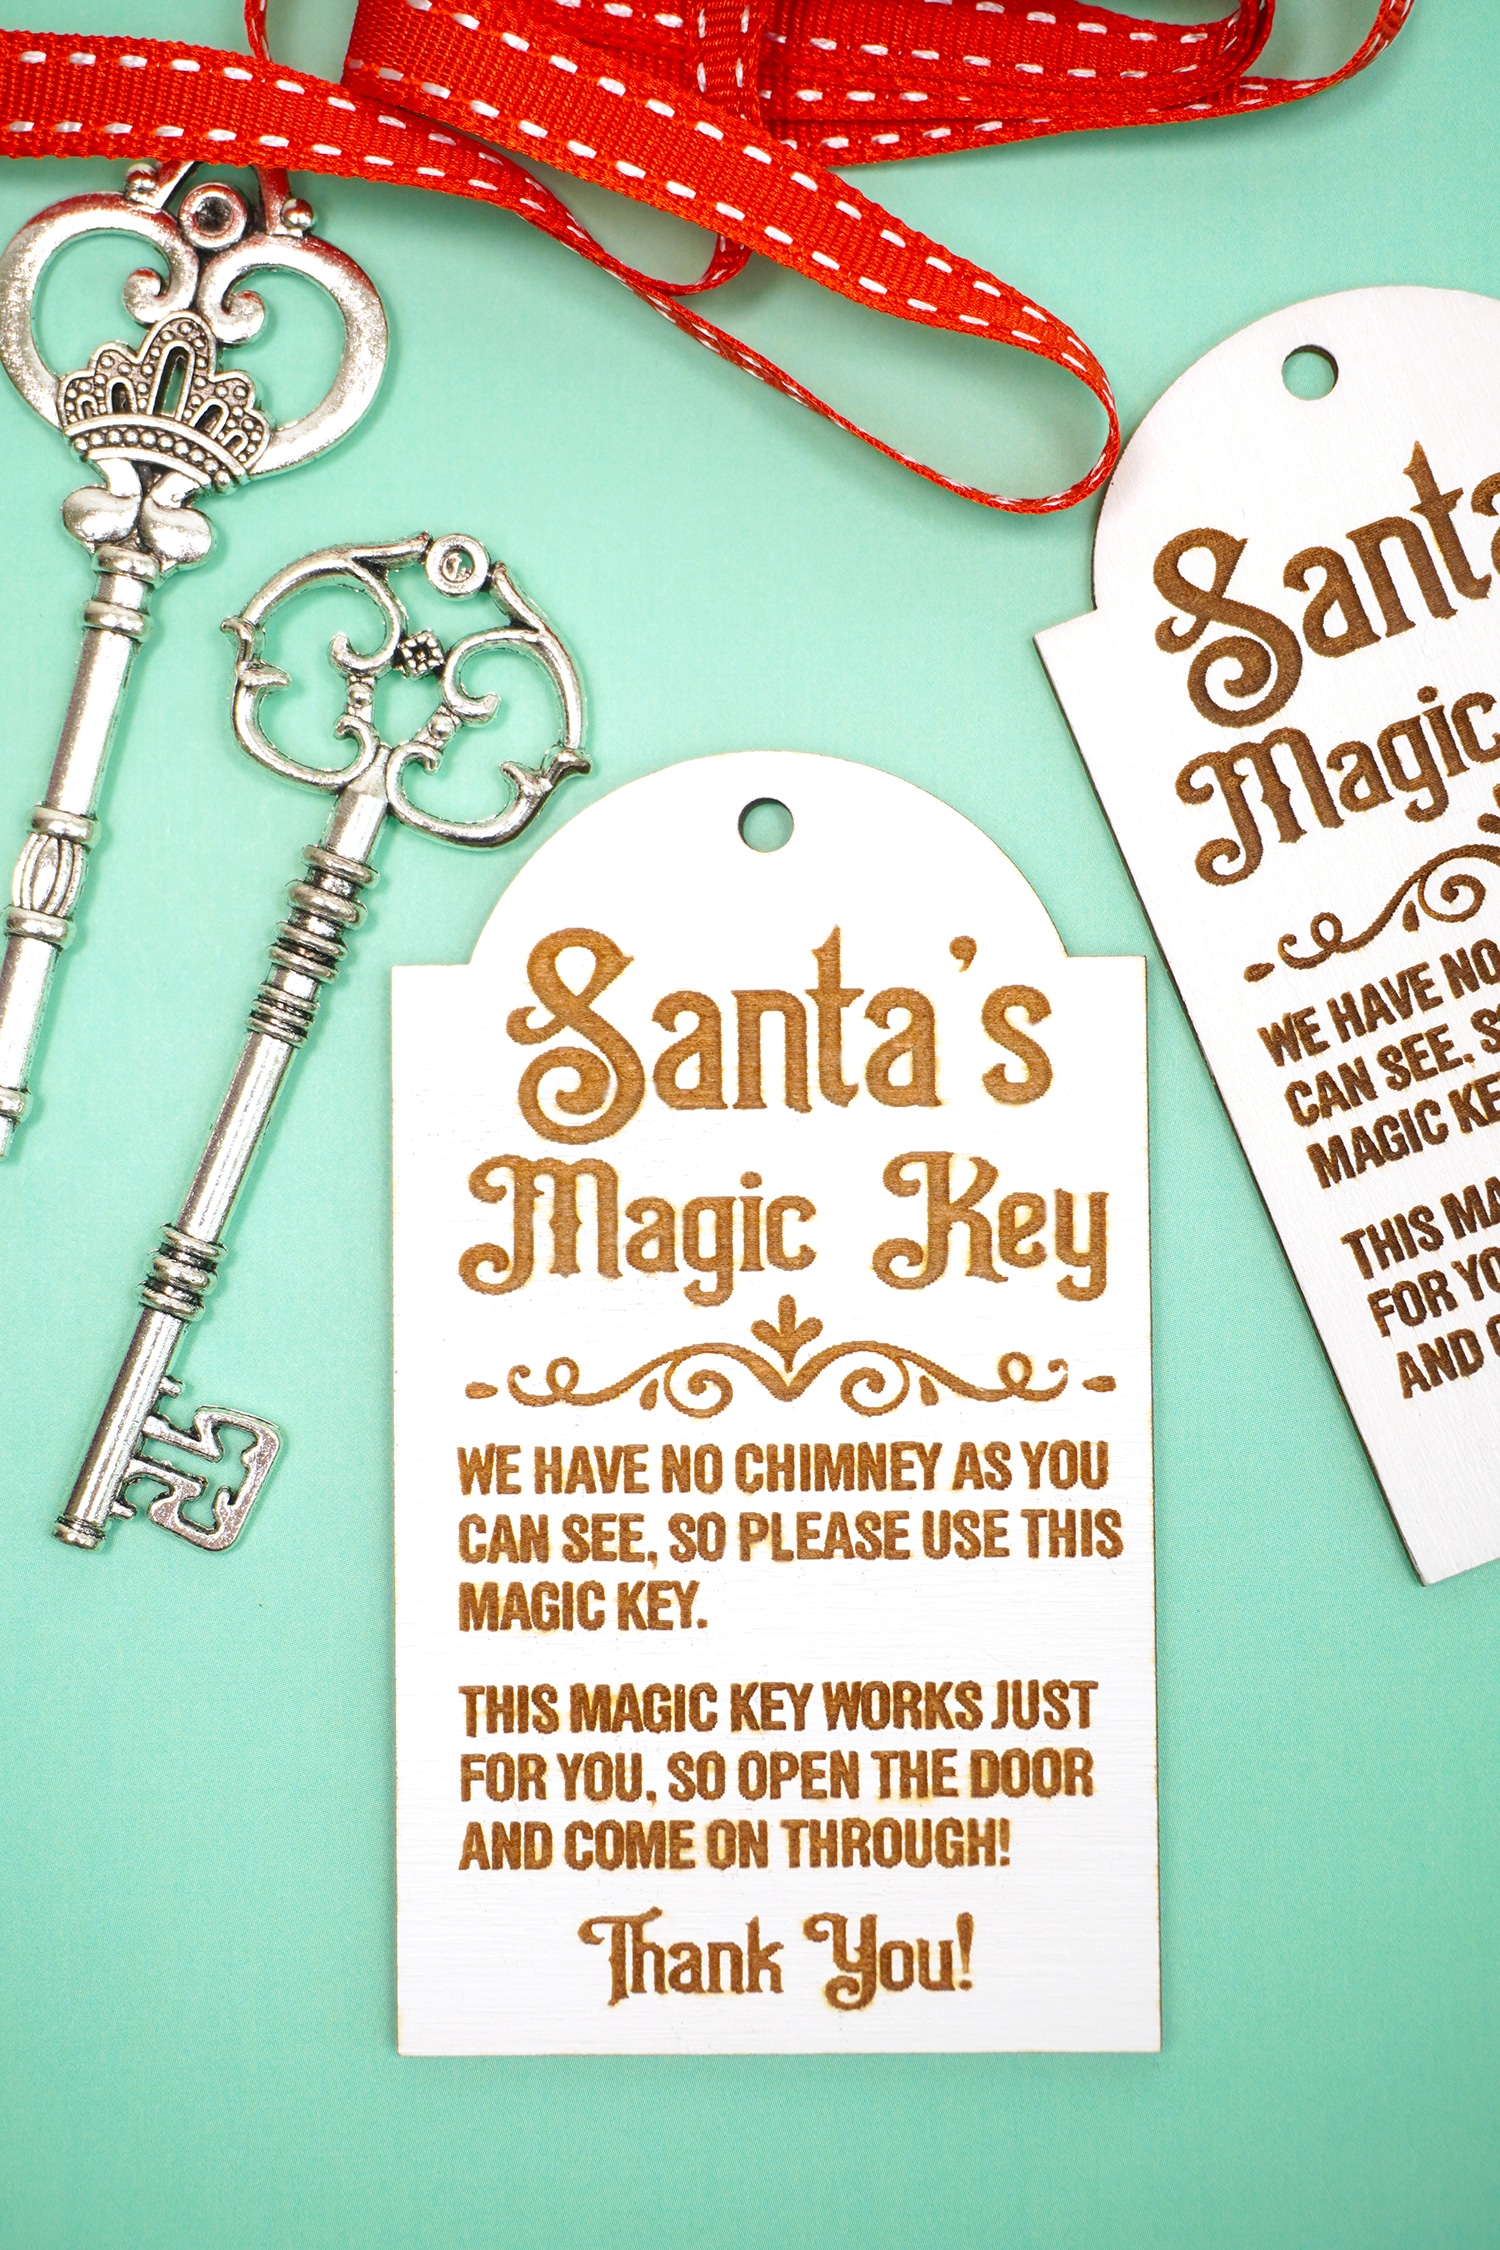 Santa's Magic Key Printable Poem